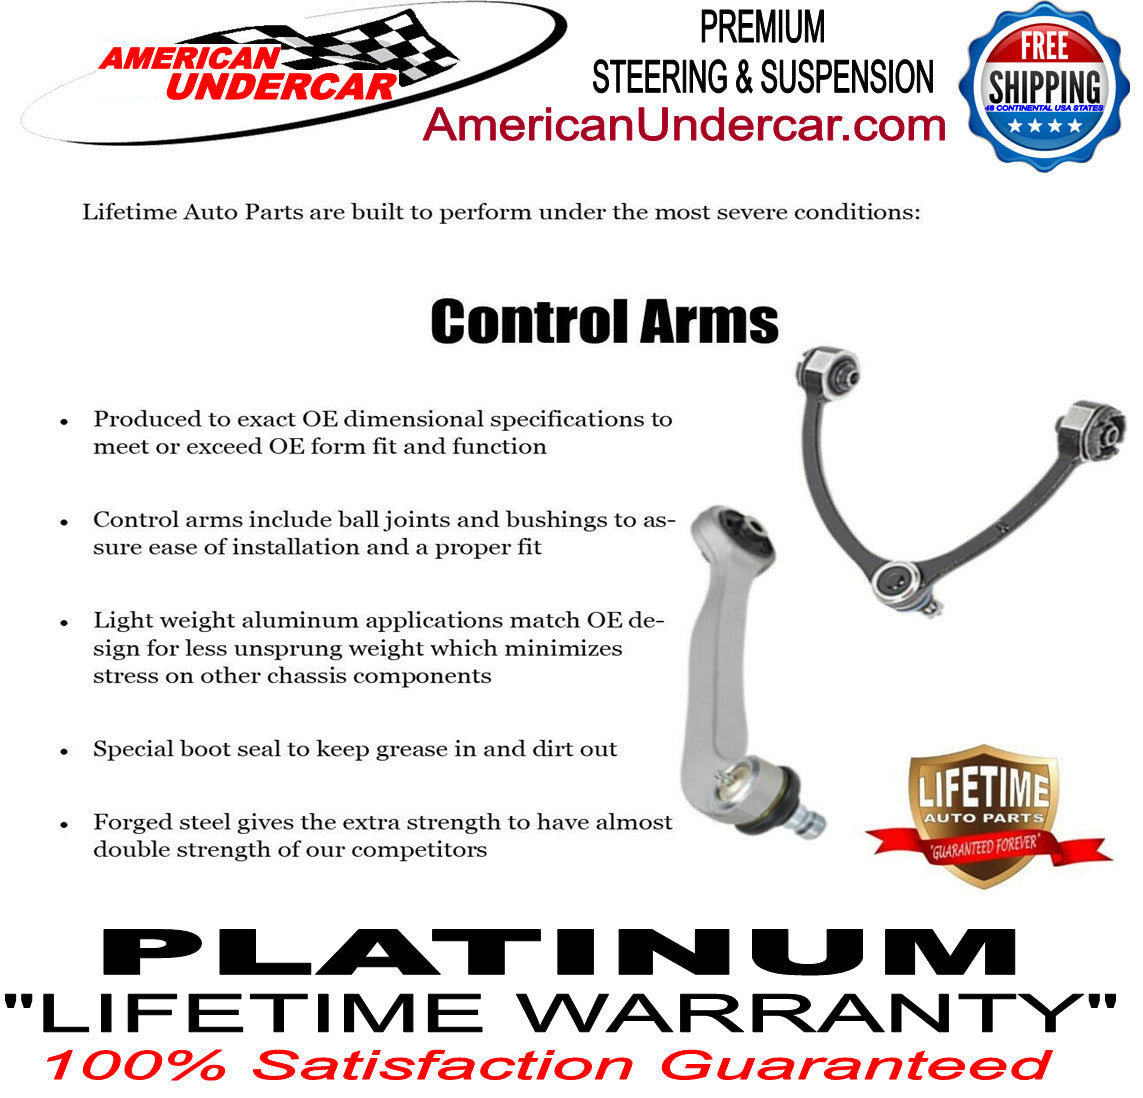 Lifetime New T Design Upgrade Steering Kit for 2003-2008 Dodge Ram 2500, 3500 4x4